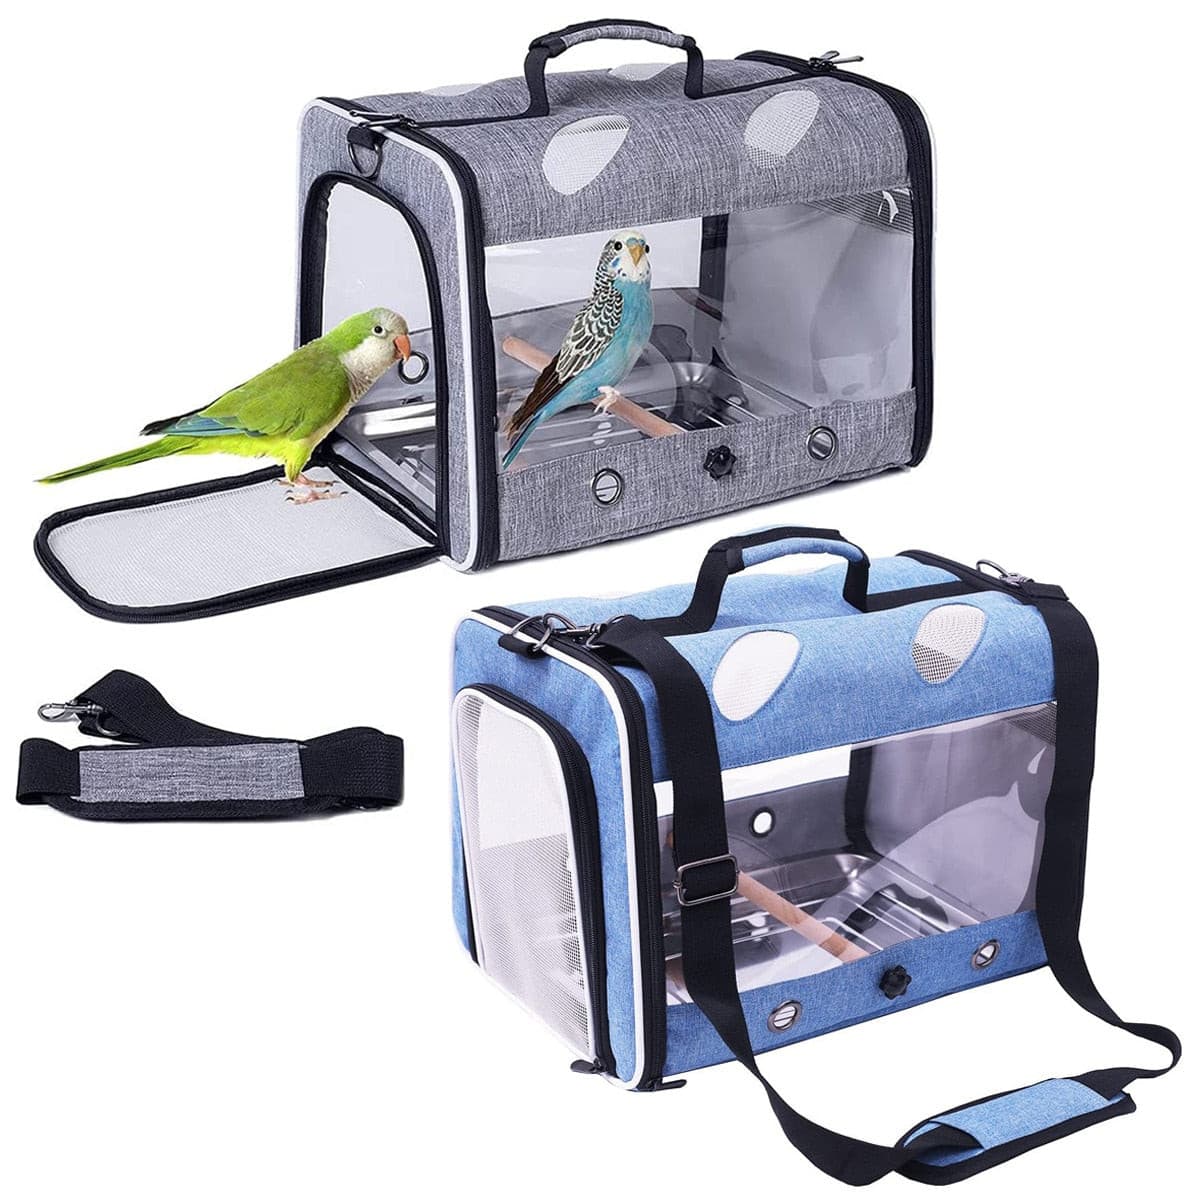 Bird Carrier Bird Travel Carrier for Parrot with Wooden Perch and Tray Bird Carrying Carrier(Blue, Bird Carrier) - GOLDEN TOUCH APPARELS WOMEN